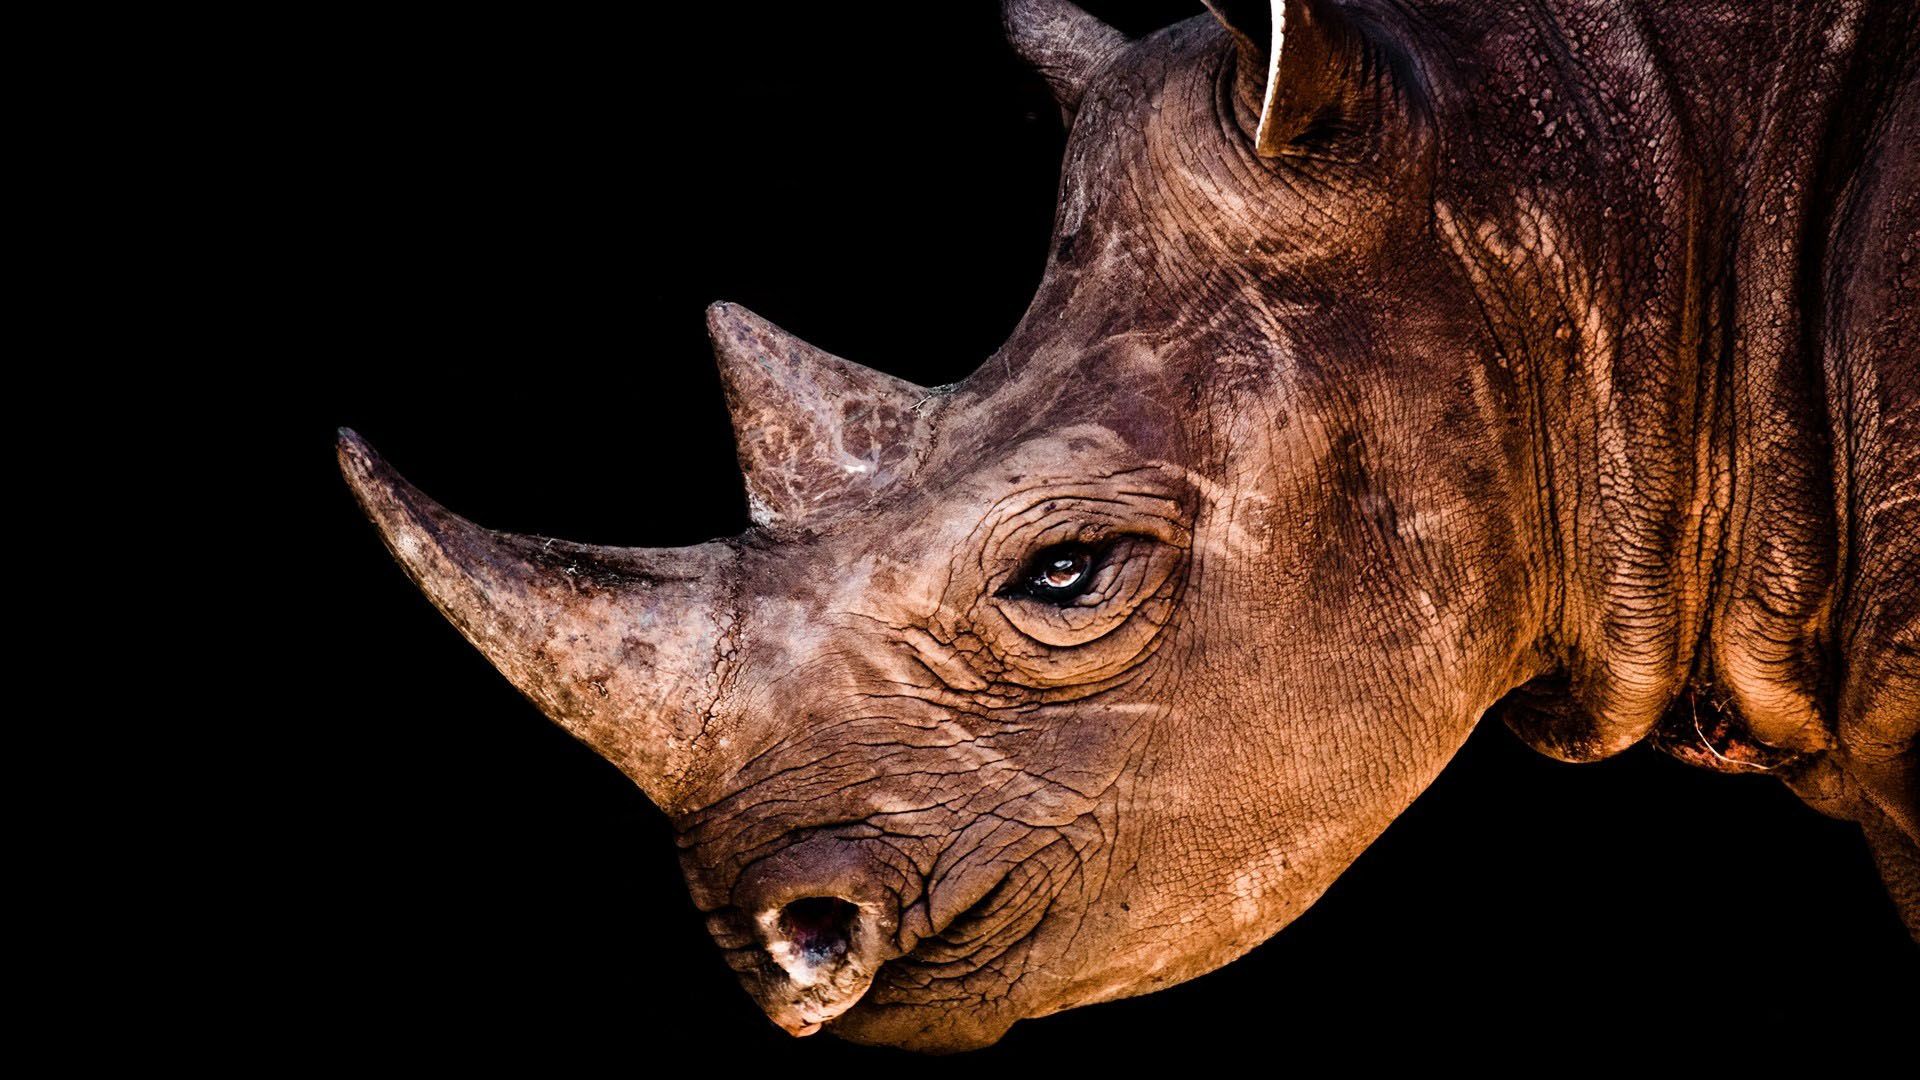 Rhino Wallpaper. Rhino Wallpaper, Rhino